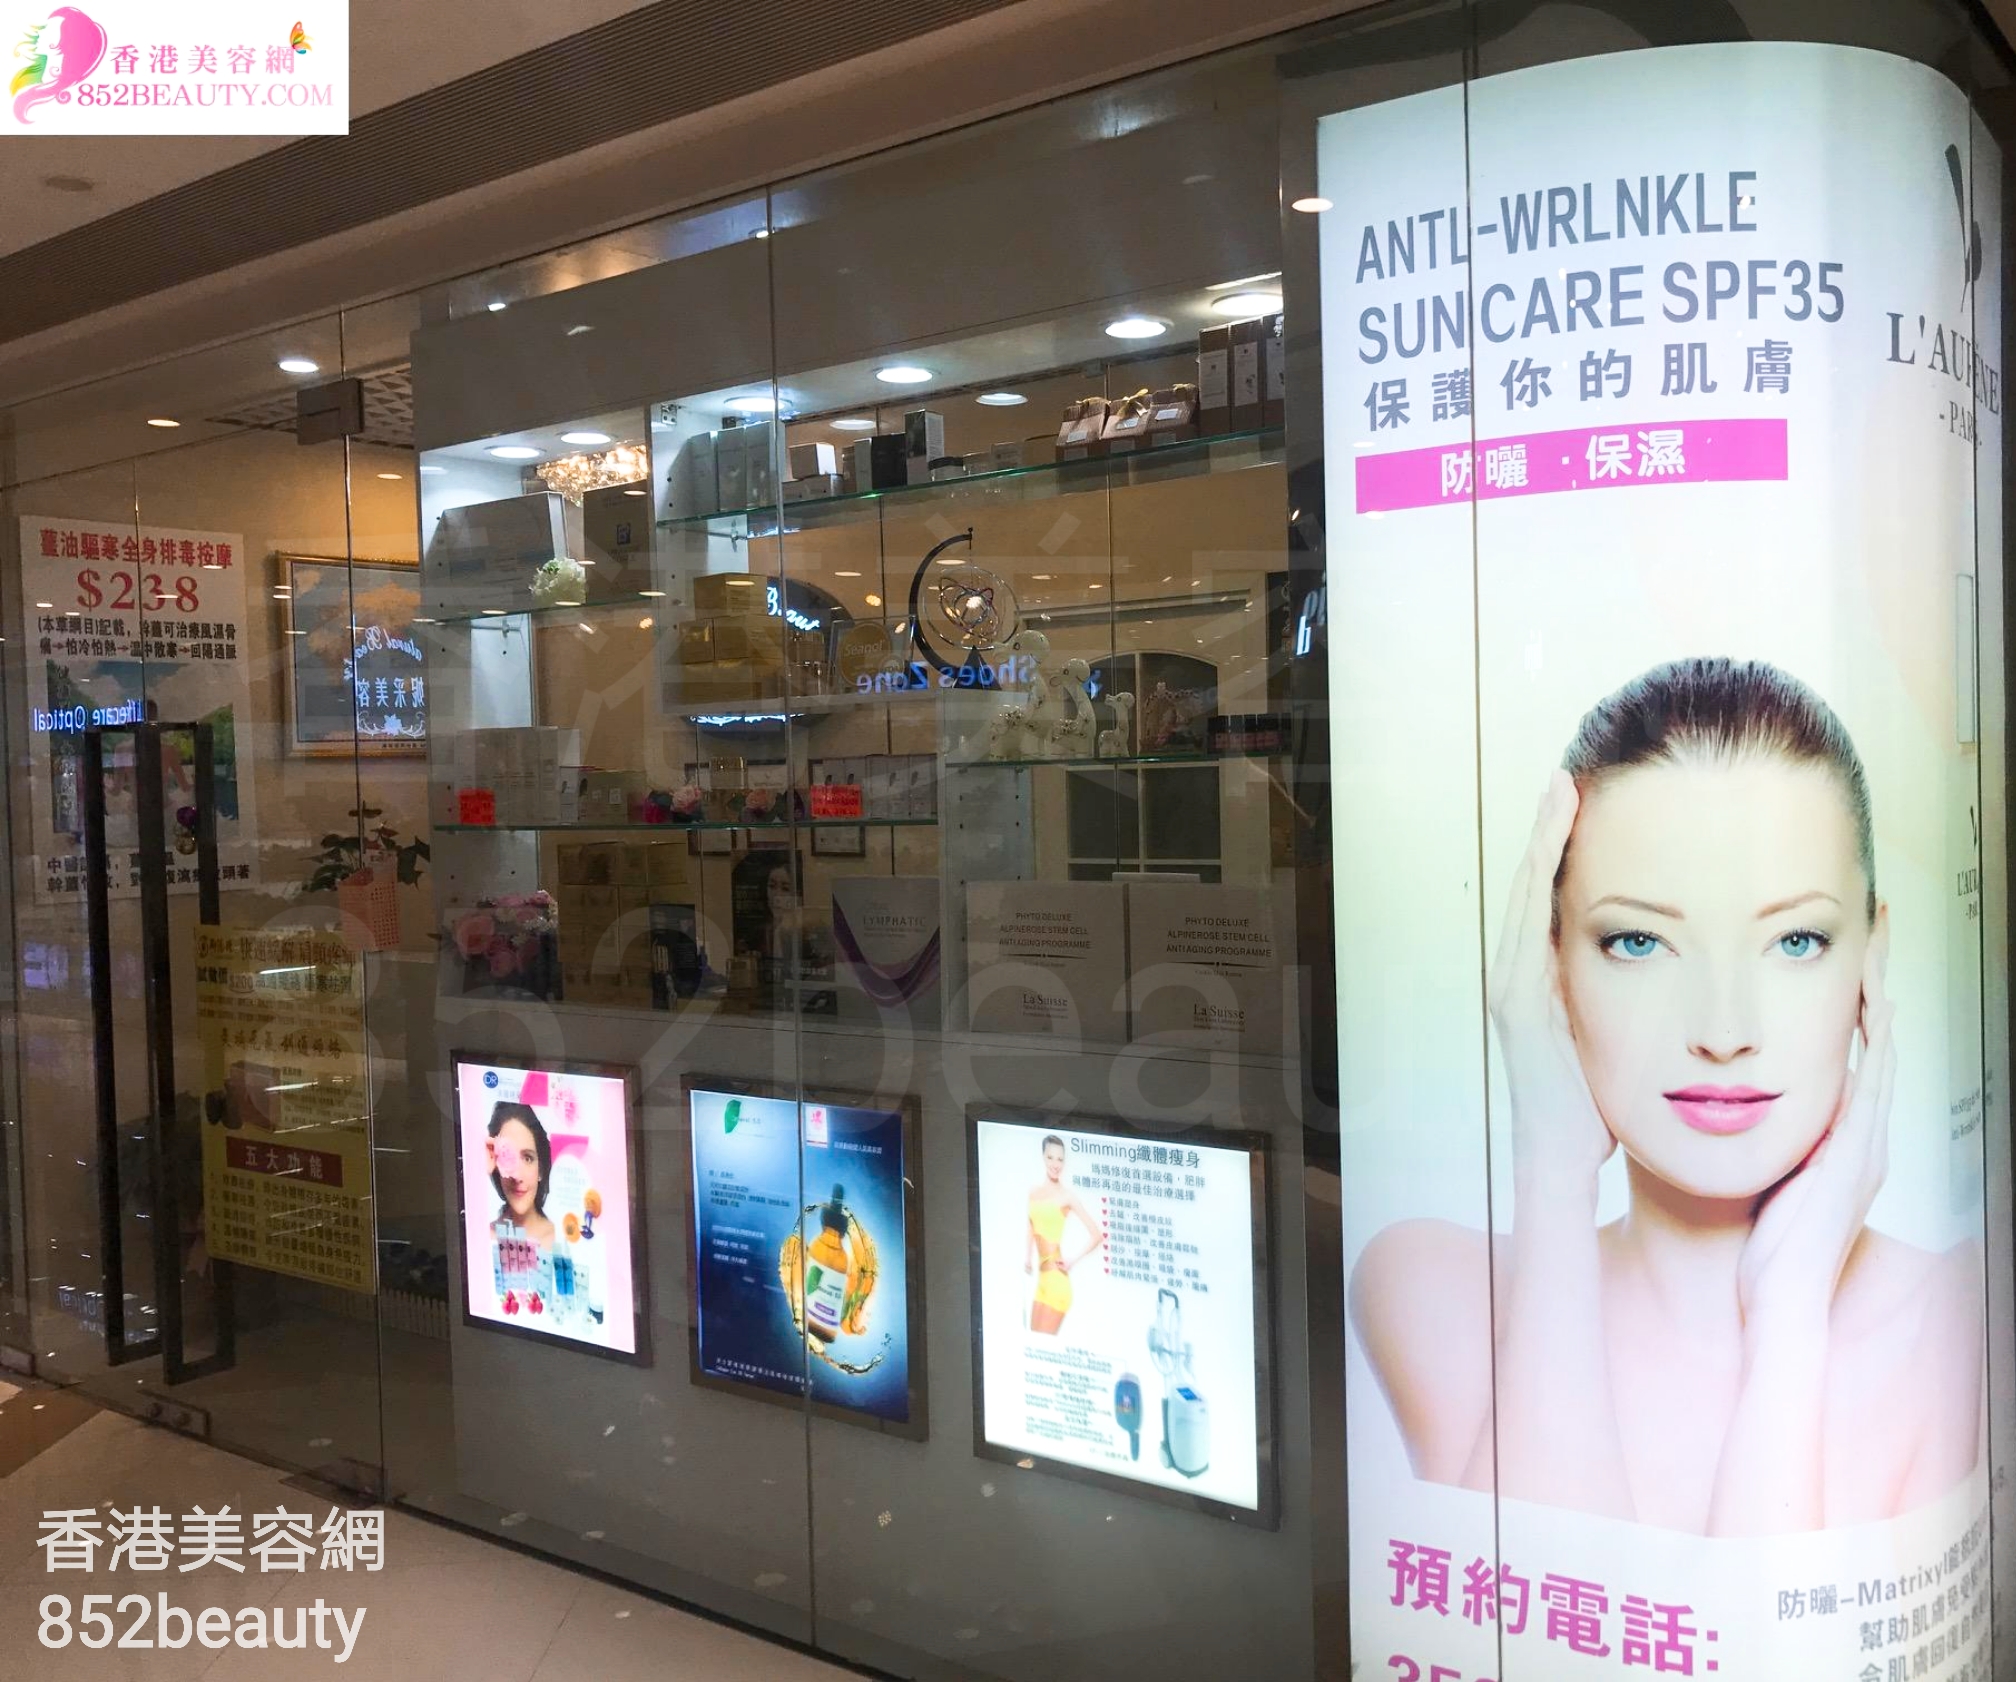 香港美容網 Hong Kong Beauty Salon 美容院 / 美容師: 妮采美容 Natural Beauty